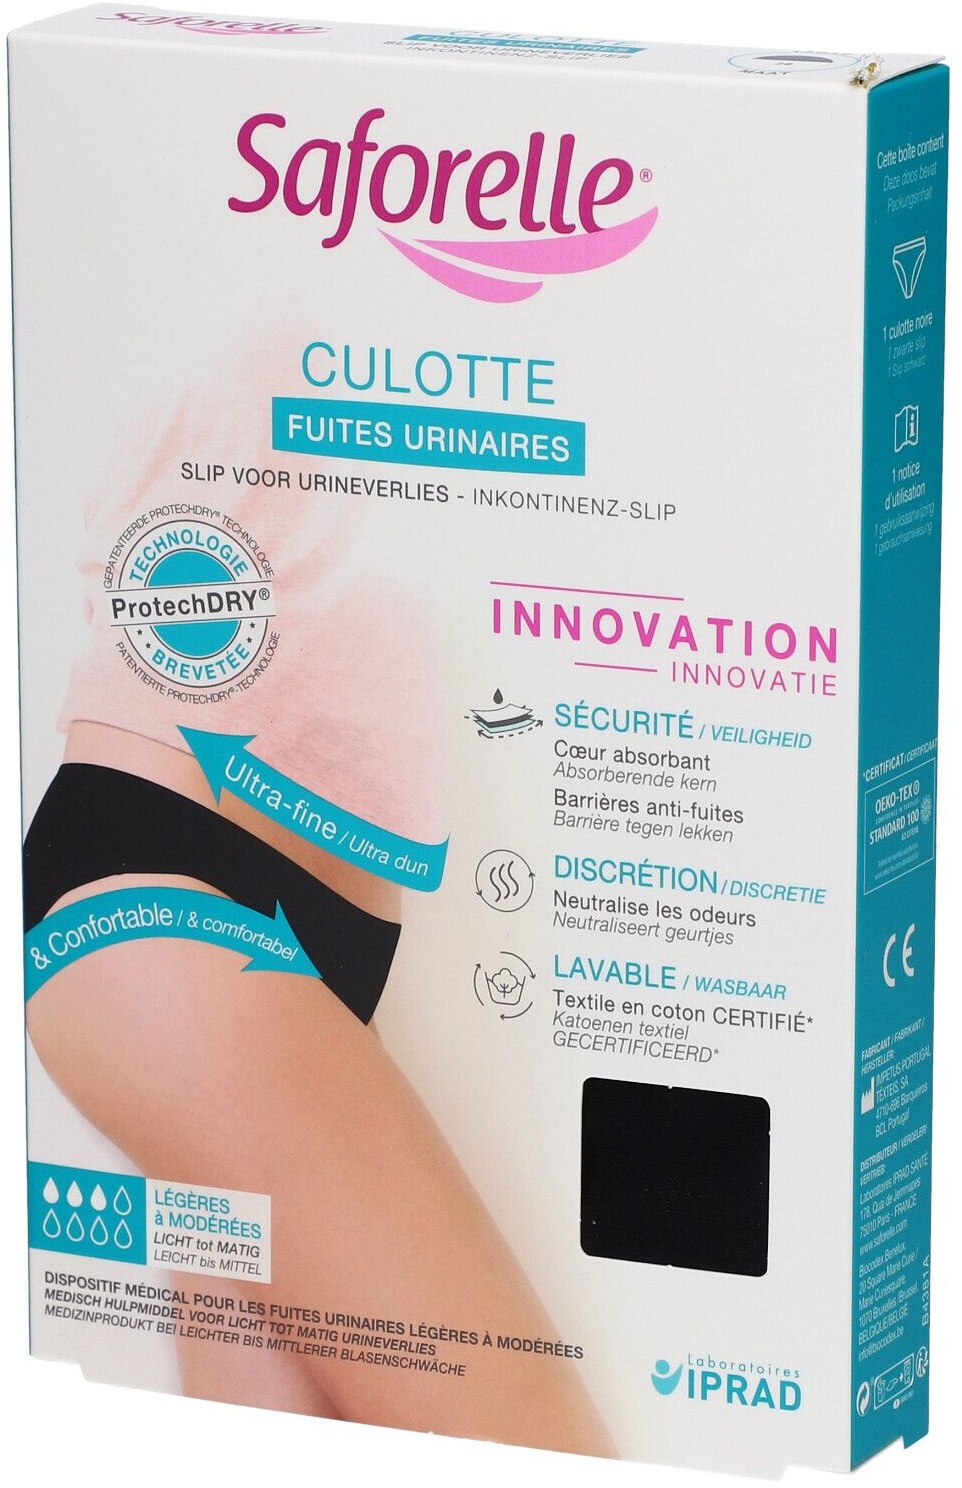 Saforelle® Culotte Fuites Urinaires Taille 38 1 pc(s) Slips pour l'incontinence